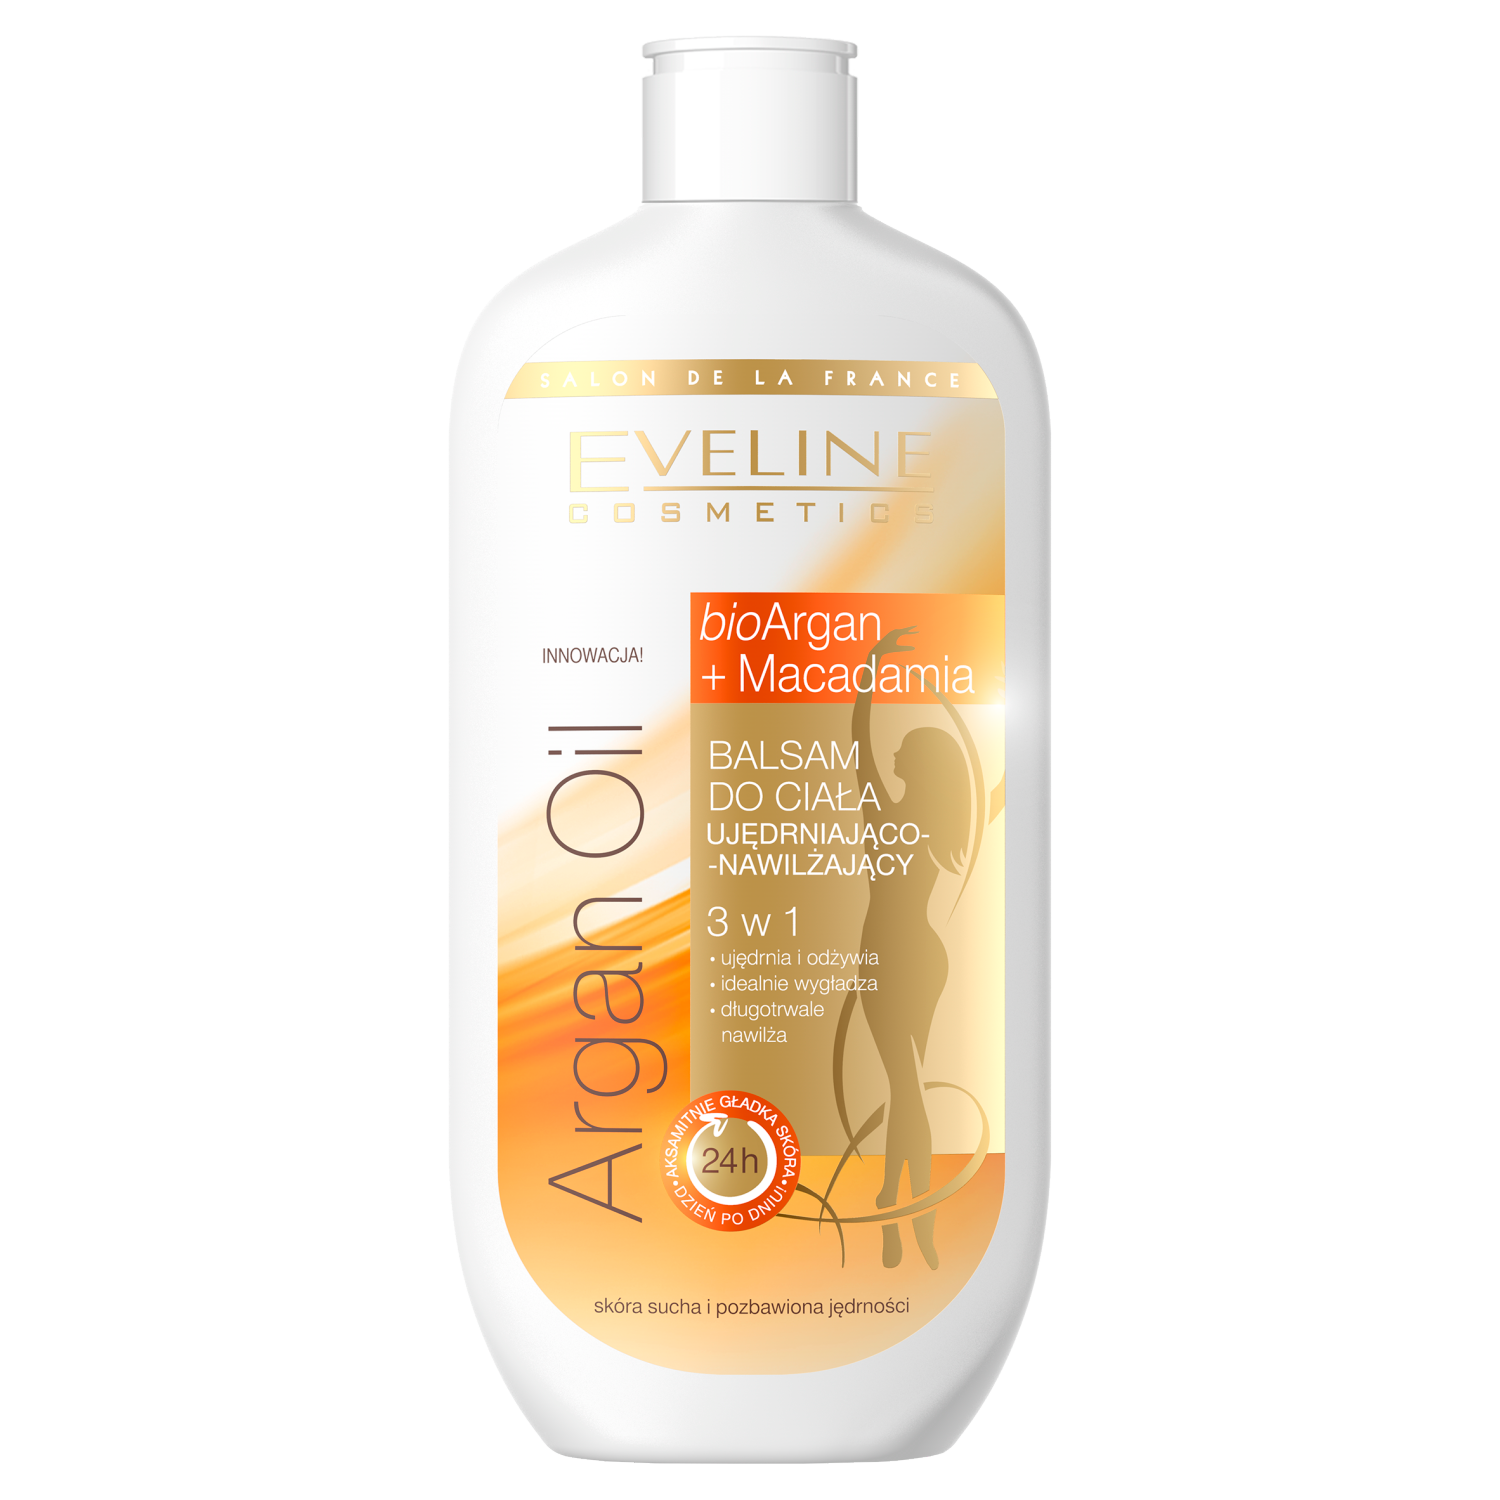 Eveline Cosmetics Argan Oil + Macadamia balsam do ciała  ujędrniająco-nawilżający do skóry suchej, 350 ml | hebe.pl